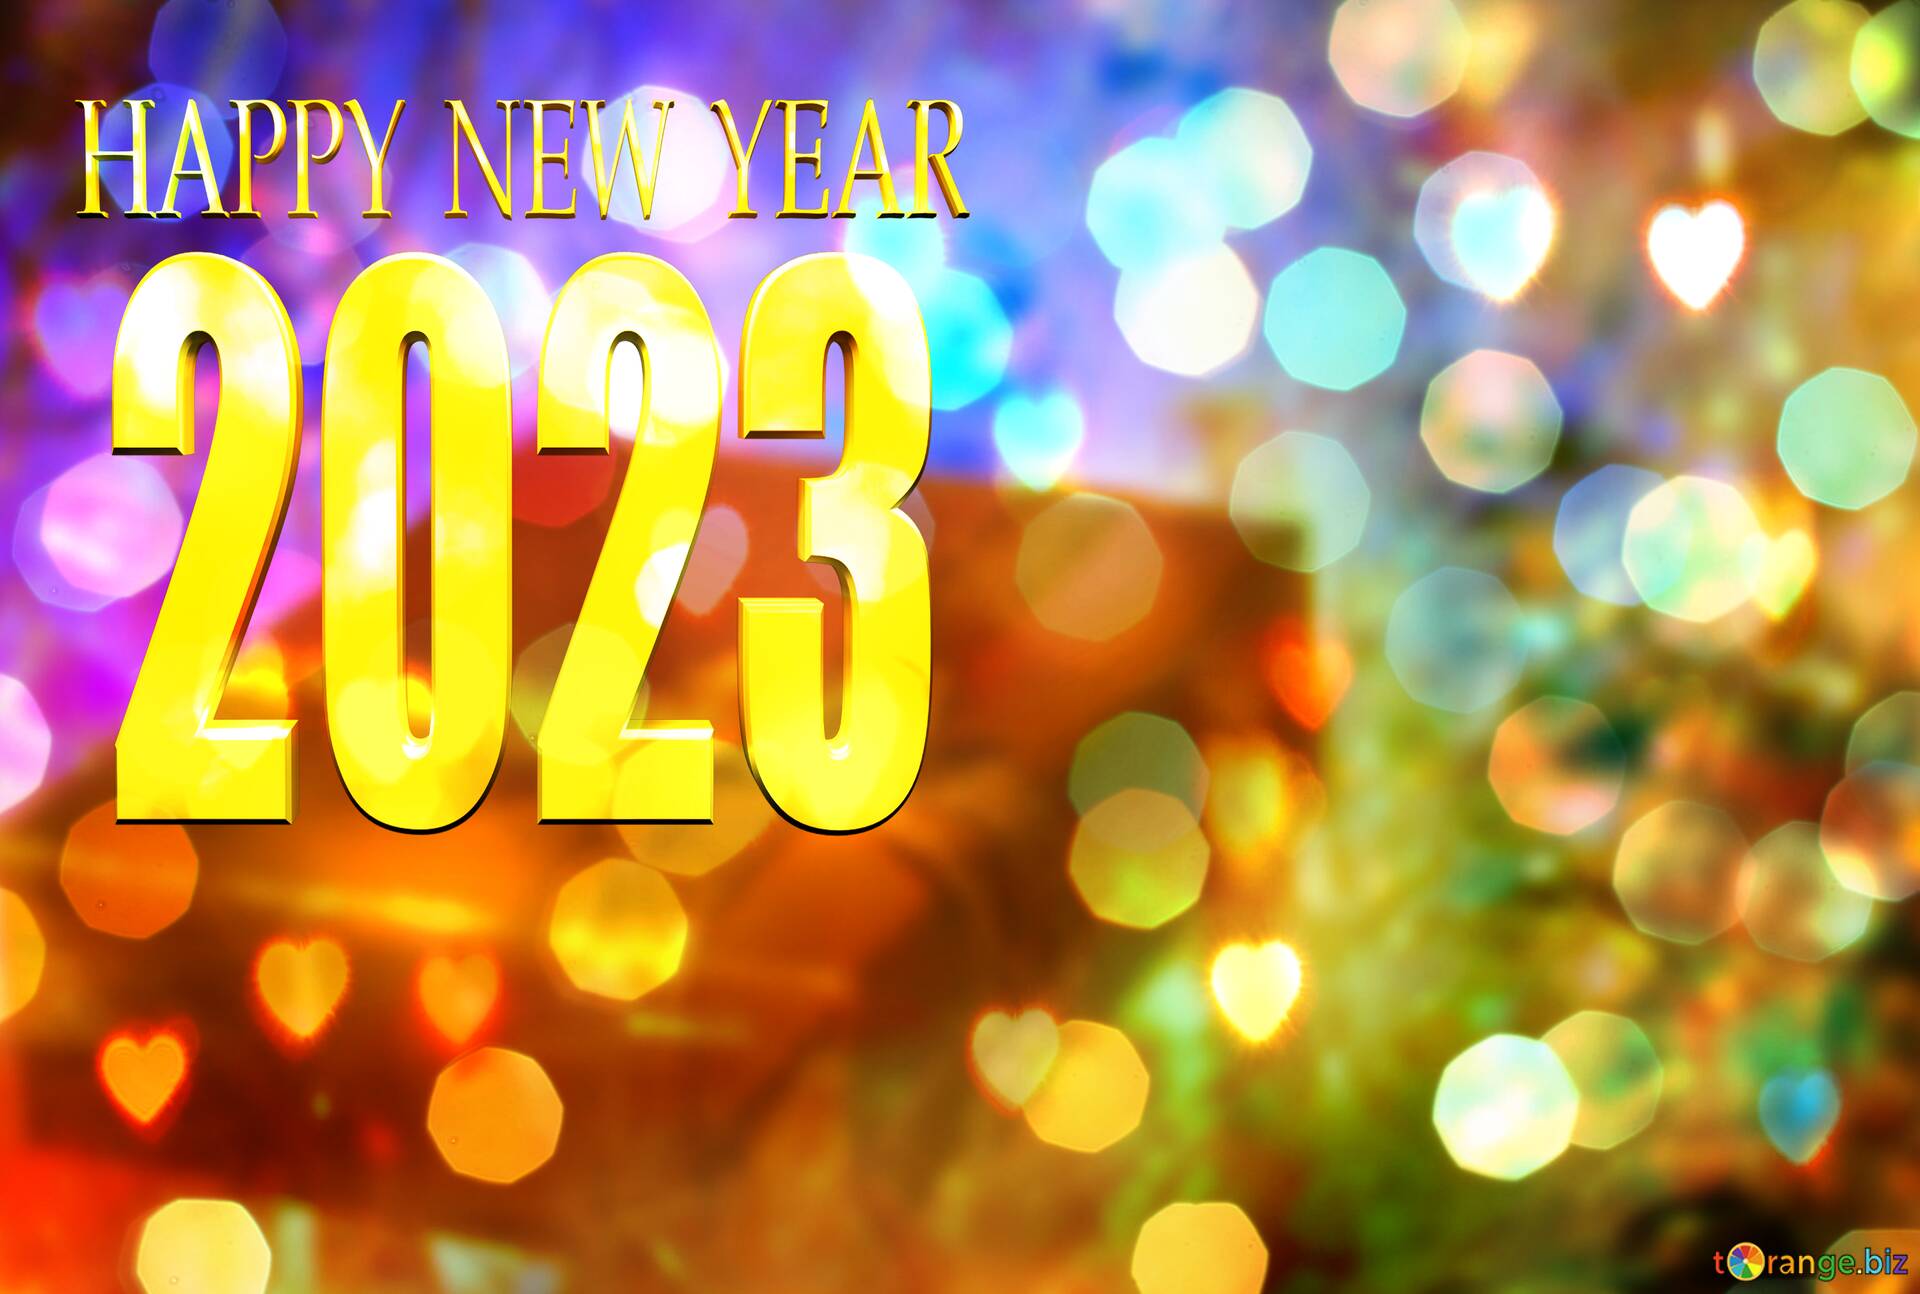 免费下载图片 Happy New Year 2022 Background 在CC-BY许可证〜免费图片股票tOrange.biz〜效果 №